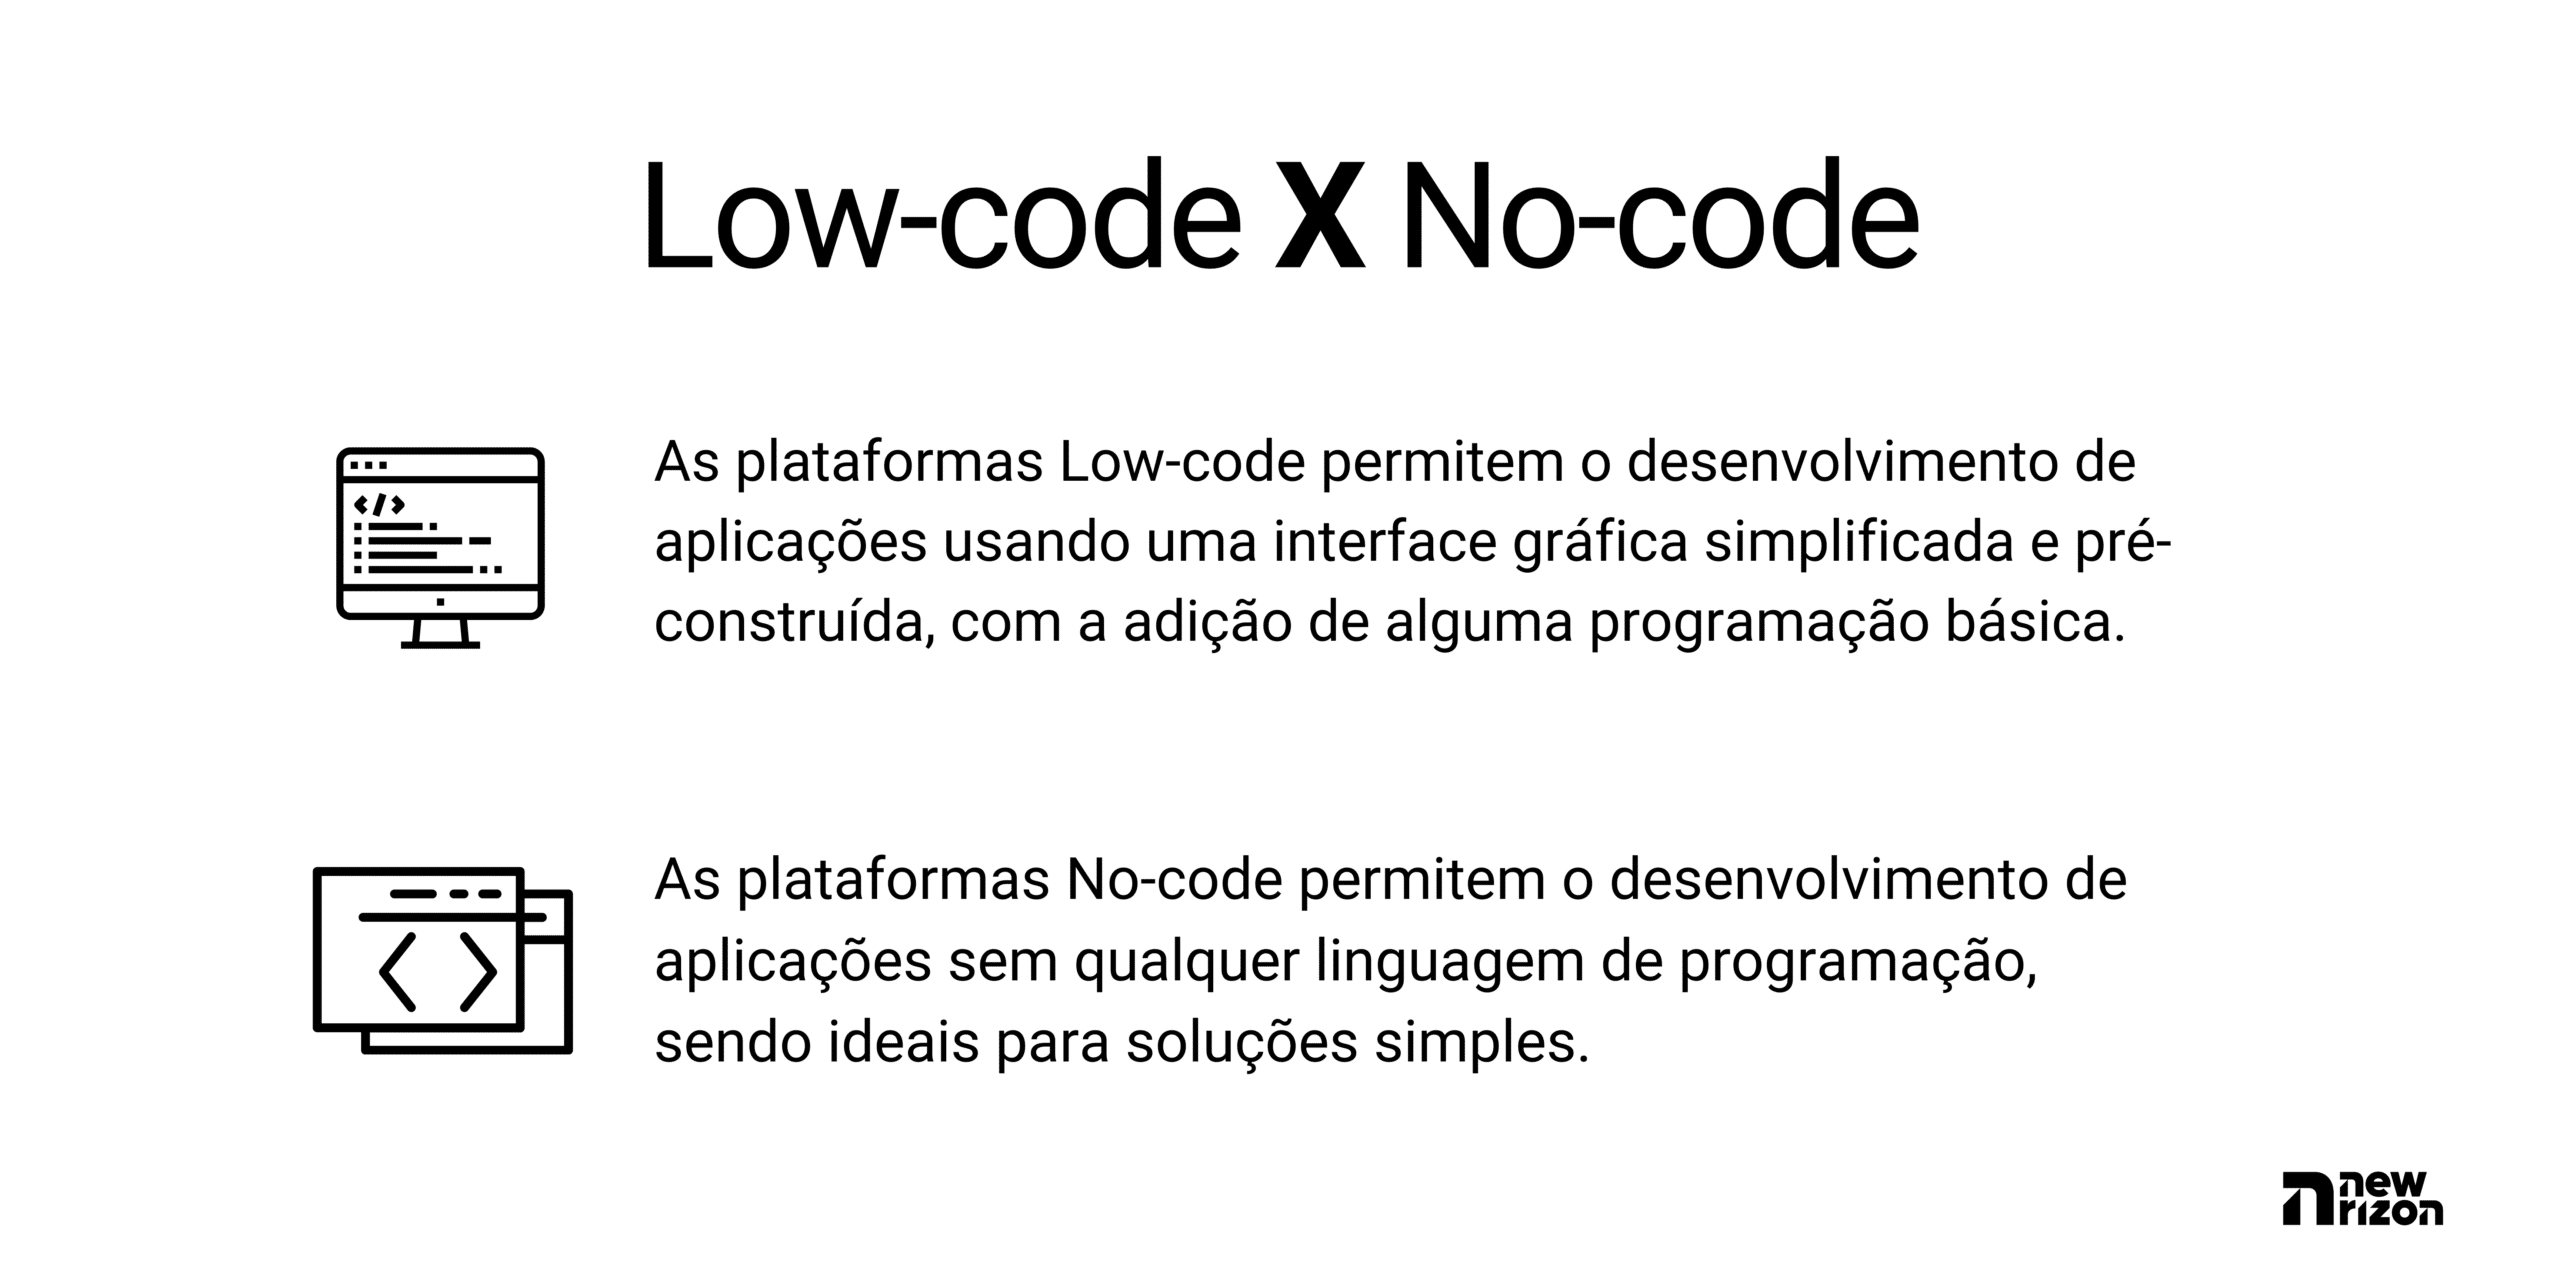 Diferenta entre Low-code e No-code. As plataformas Low-code permitem o desenvolvimento de aplicações usando uma interface gráfica simplificada e pré-construída, com a adição de alguma programação básica. Enquanto as plataformas No-code permitem o desenvolvimento de aplicações sem qualquer linguagem de programação, sendo ideais para soluções simples.